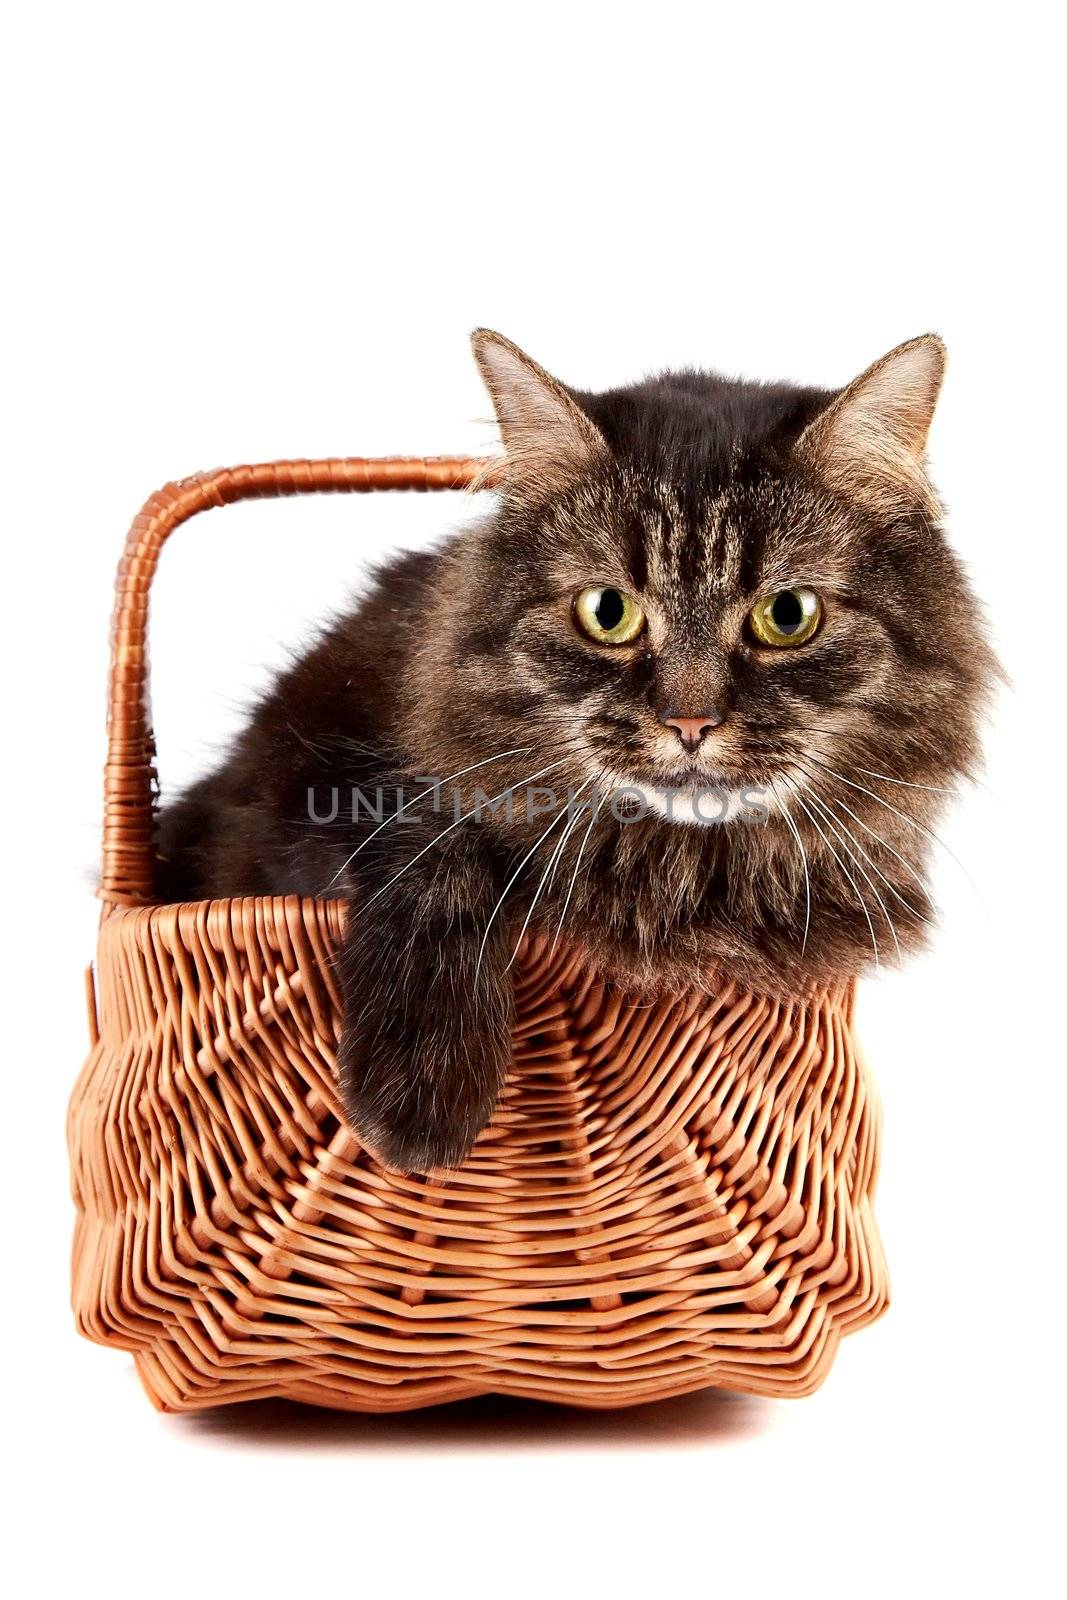 Portrait a fluffy cat in a wattled basket by Azaliya